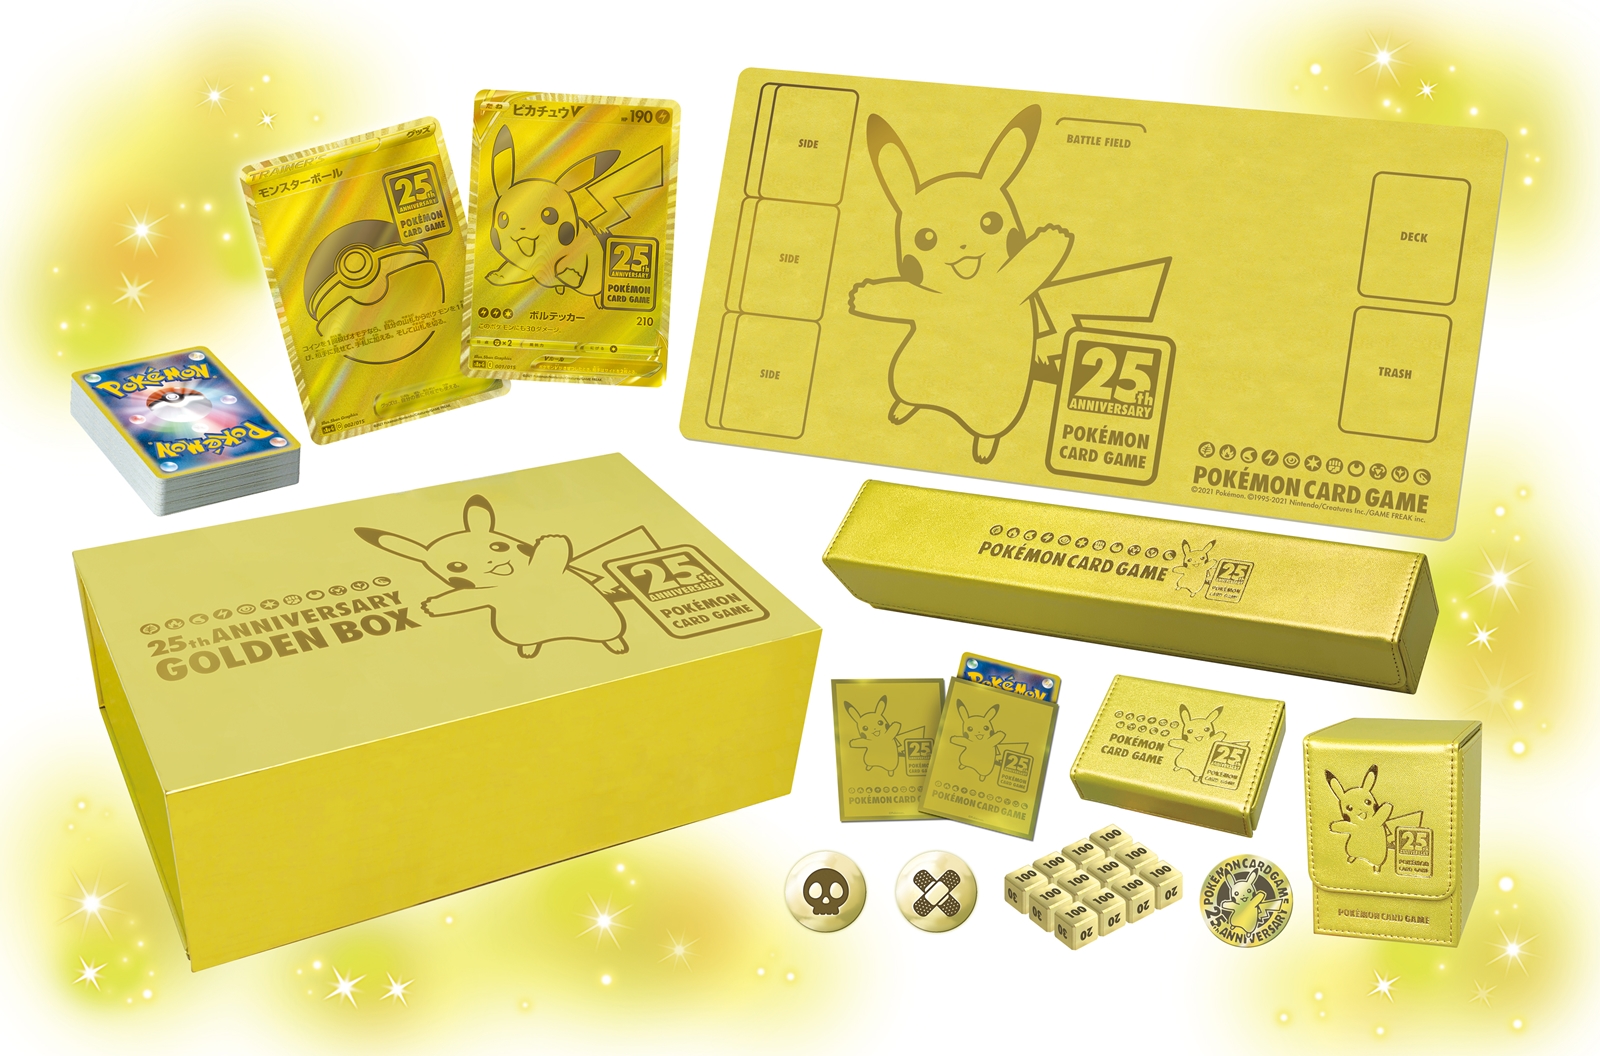 ポケモンカードゲーム」、「25th ANNIVERSARY GOLDEN BOX」は受注生産